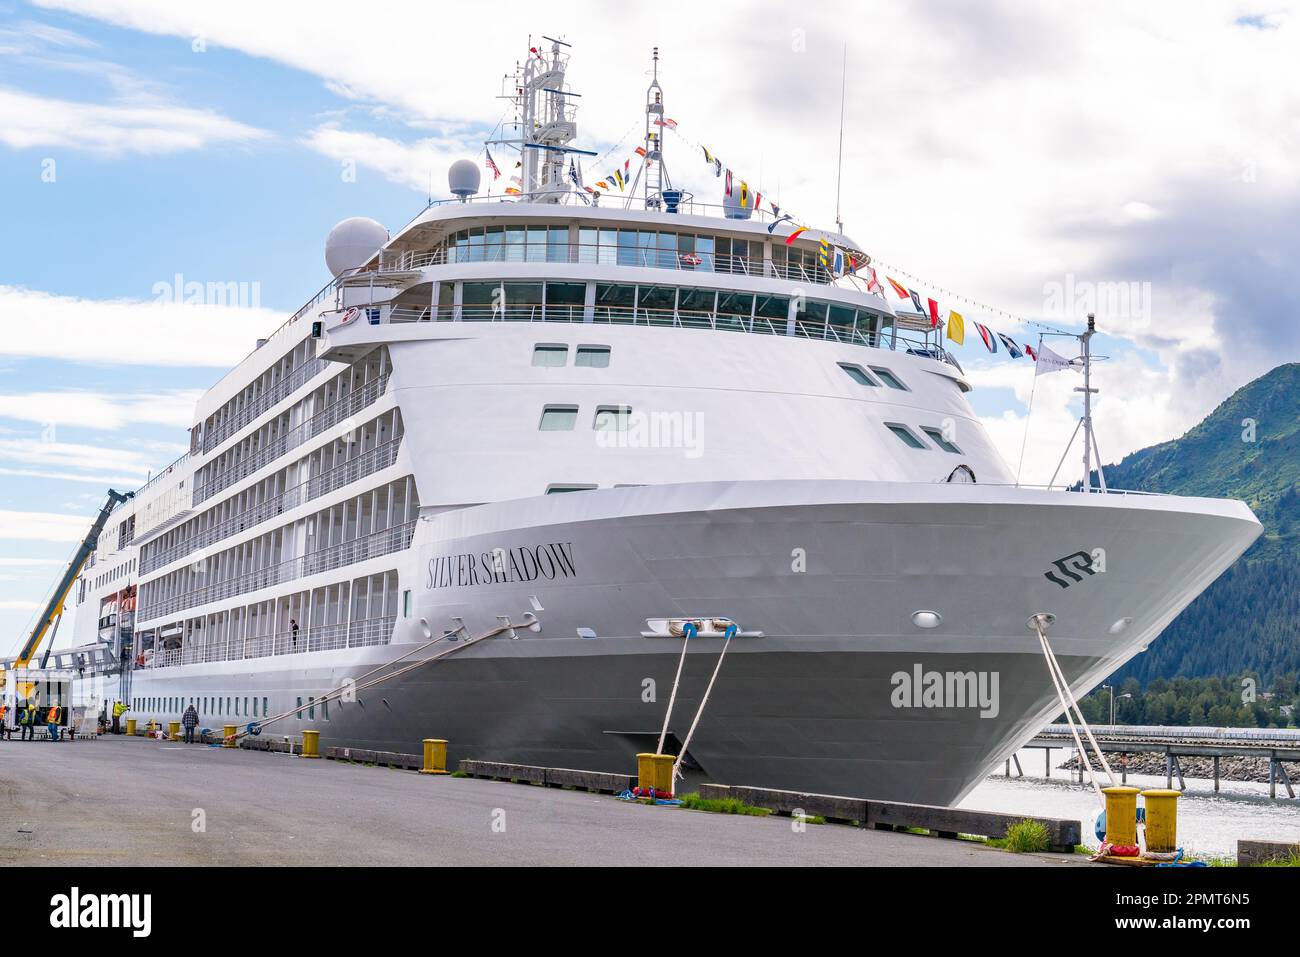 Seward, AK - 1 septembre 2022 : bateau de croisière Silver Shadow, qui fait partie de la flotte de croisières Silversea, amarré à Seward, en Alaska Banque D'Images